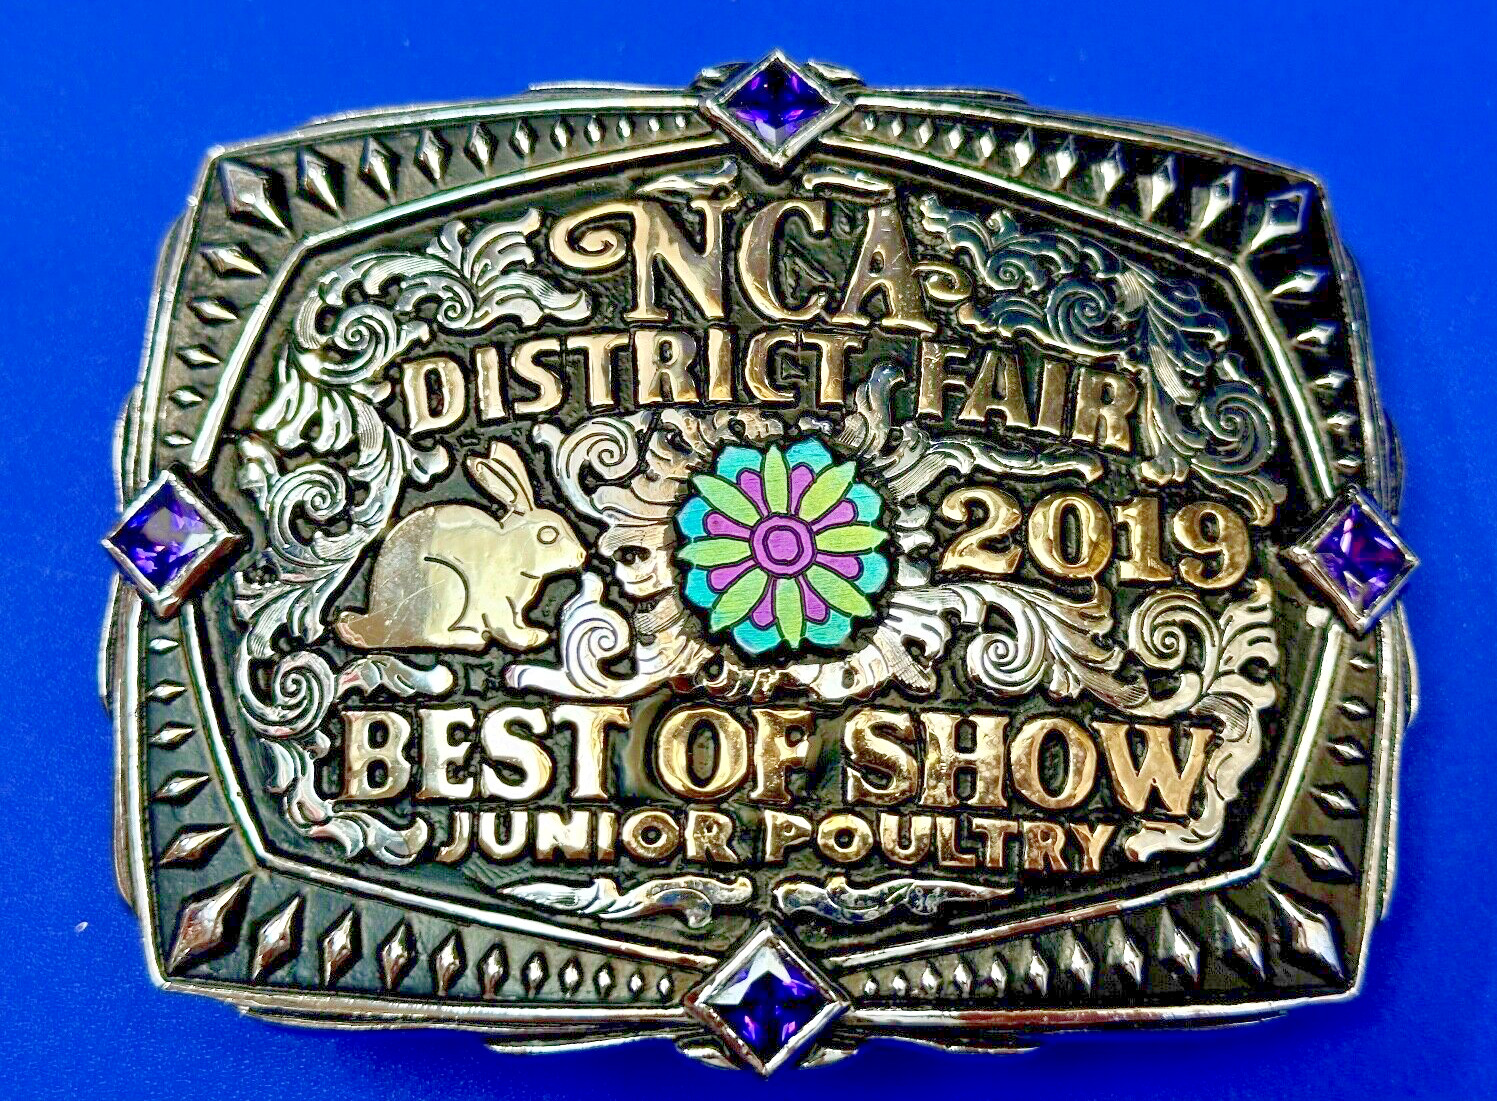 Best of Show JR poultry Trophy NCA District Fair 2019 Arkansas belt buckle By KS